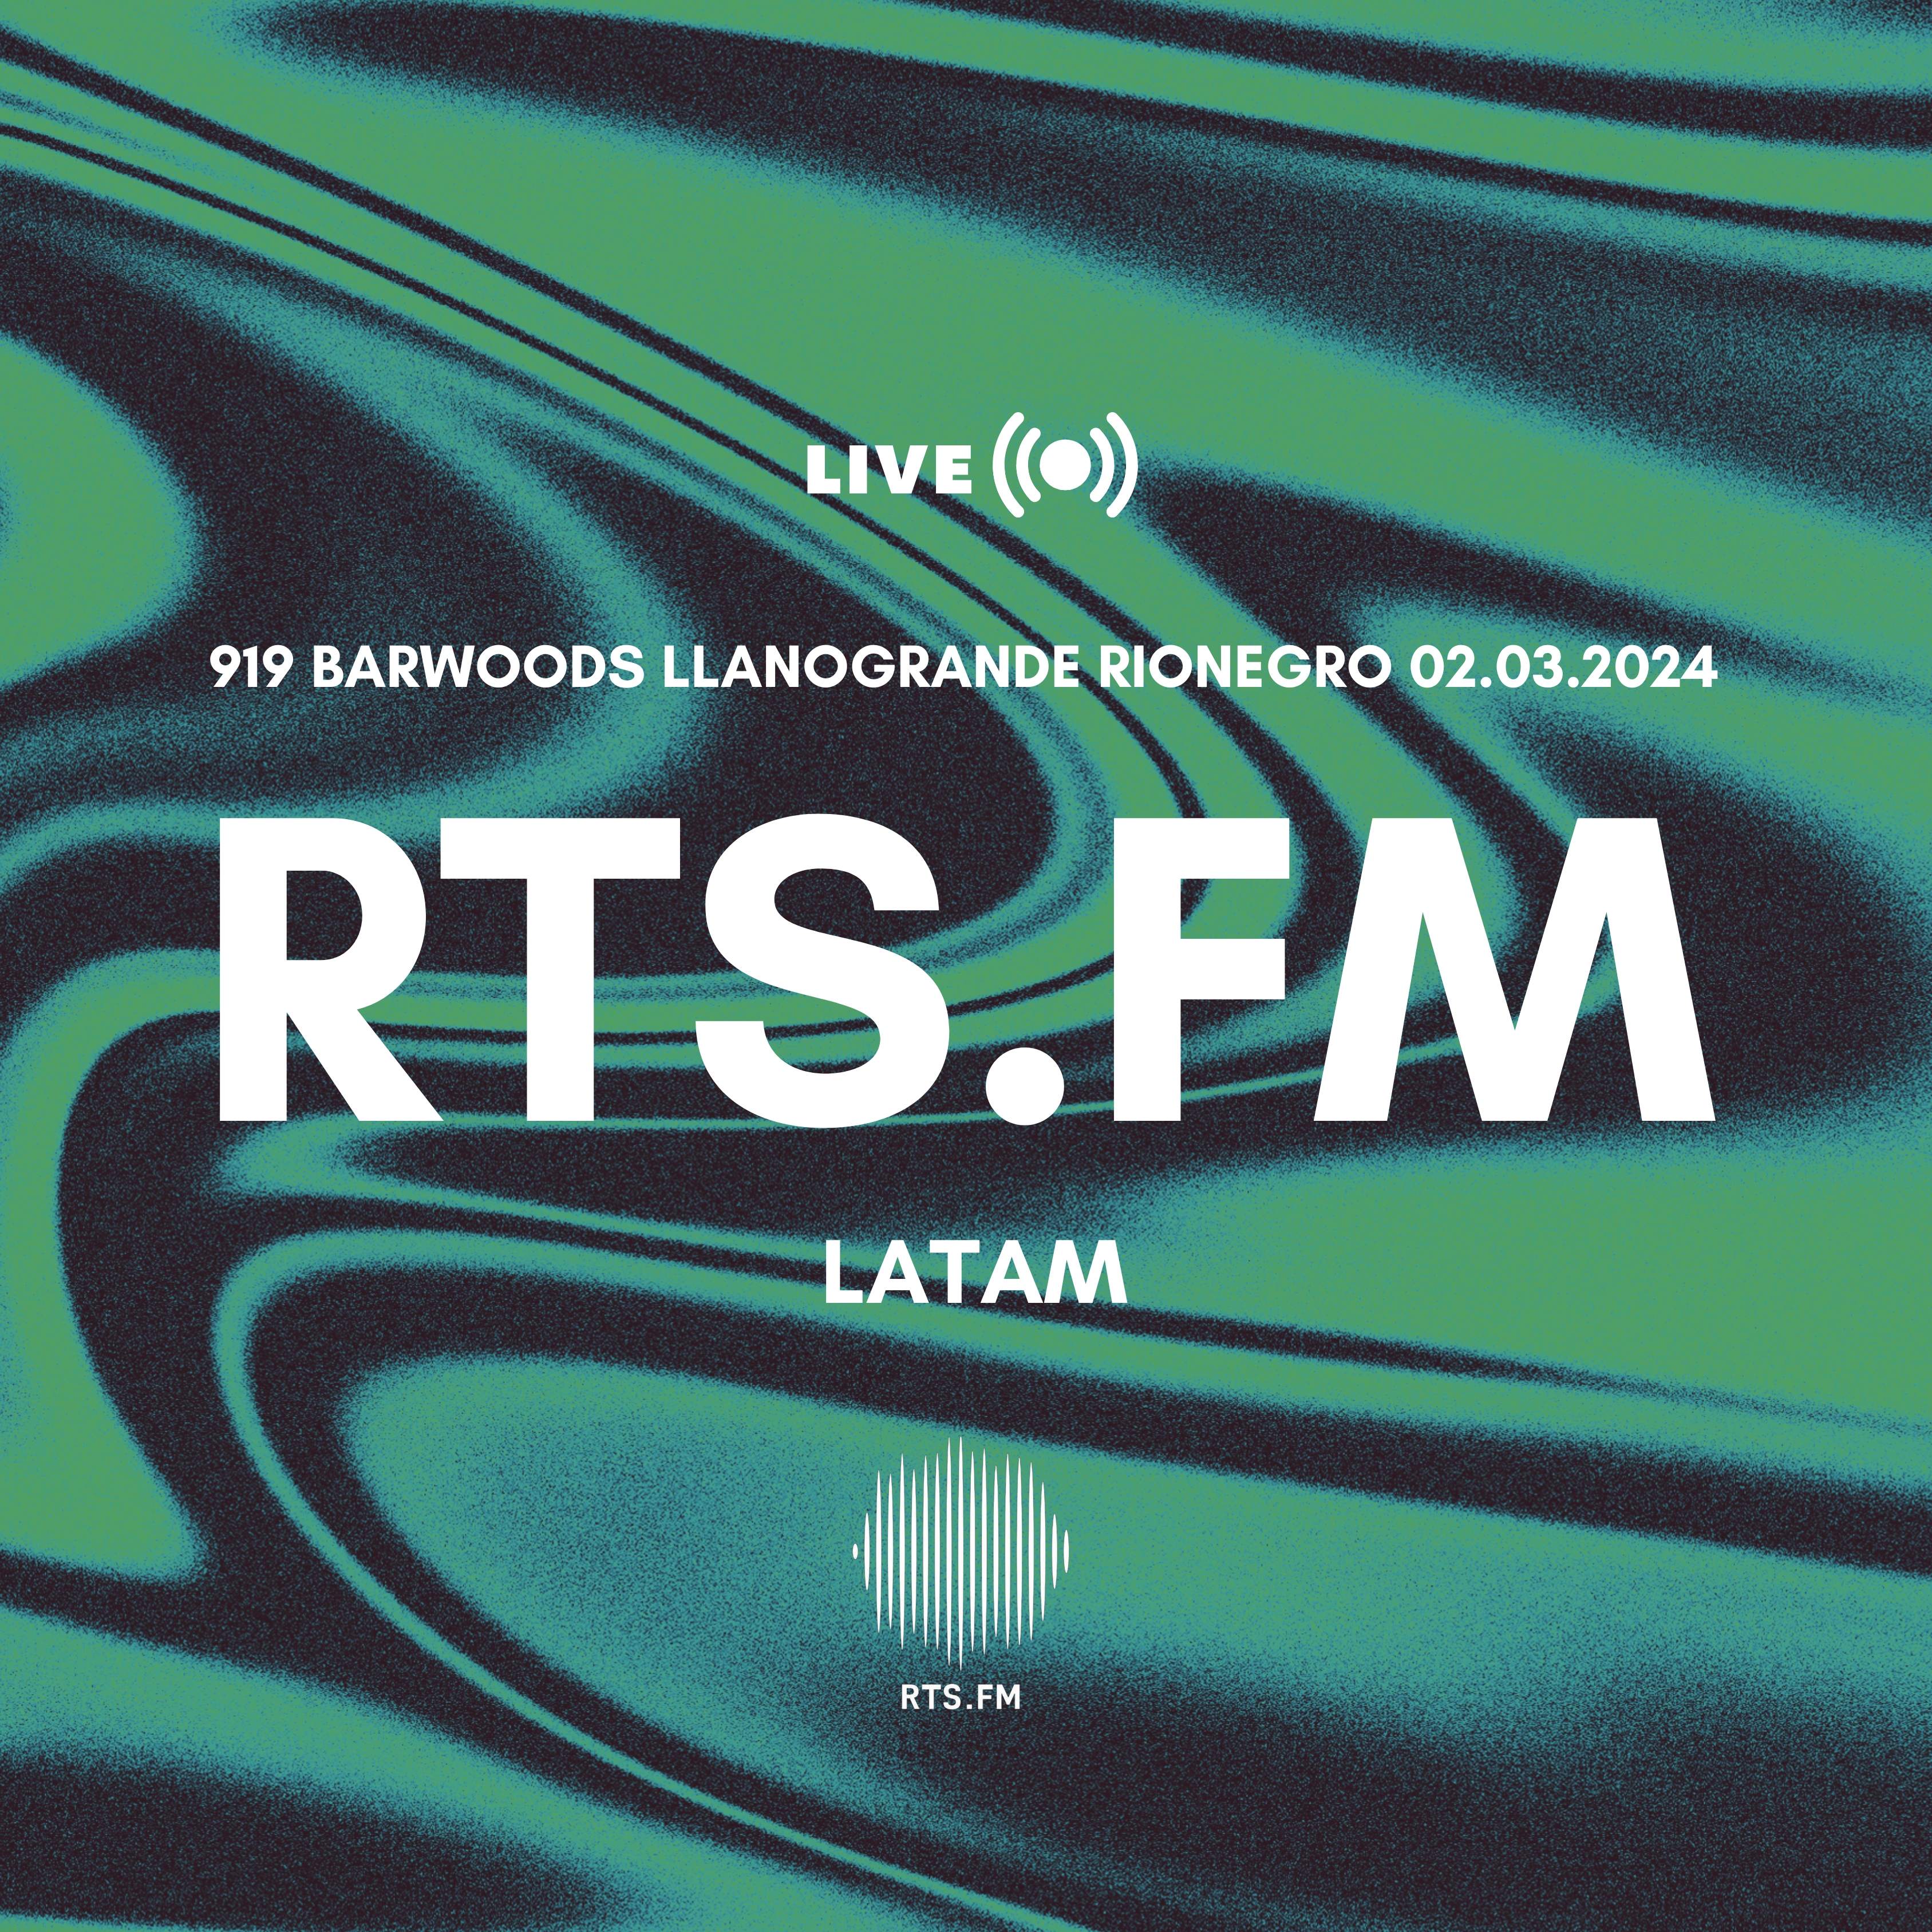 RTS.FM LIVE 919 BAR LLANOGRANDE RIONEGRO - Página frontal